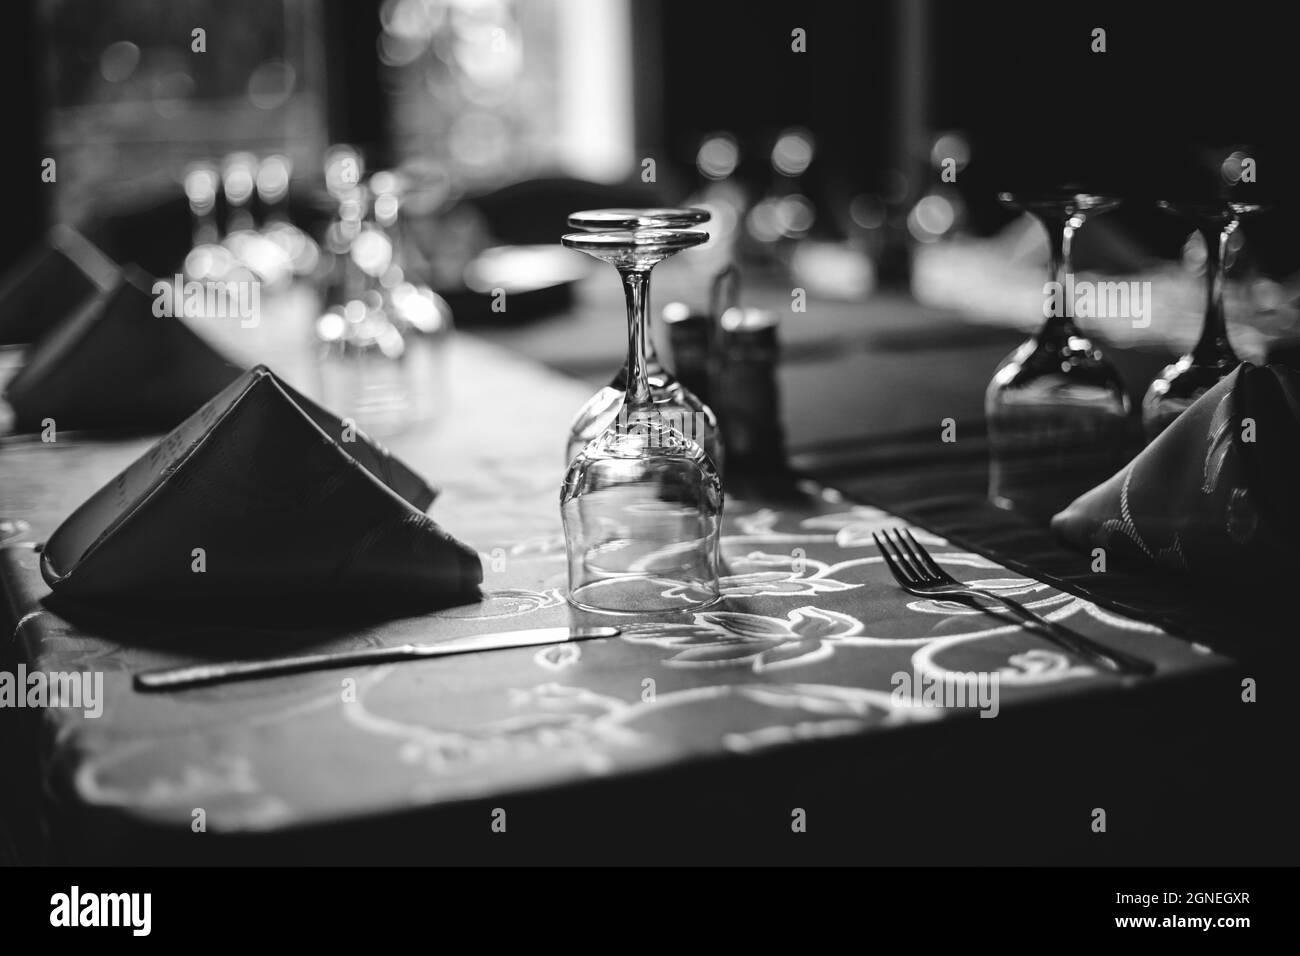 Immagine della profondità di campo poco profonda (messa a fuoco selettiva) con un tavolo da ristorante pronto per ricevere i clienti. Bicchieri e stoviglie vuoti. Foto Stock